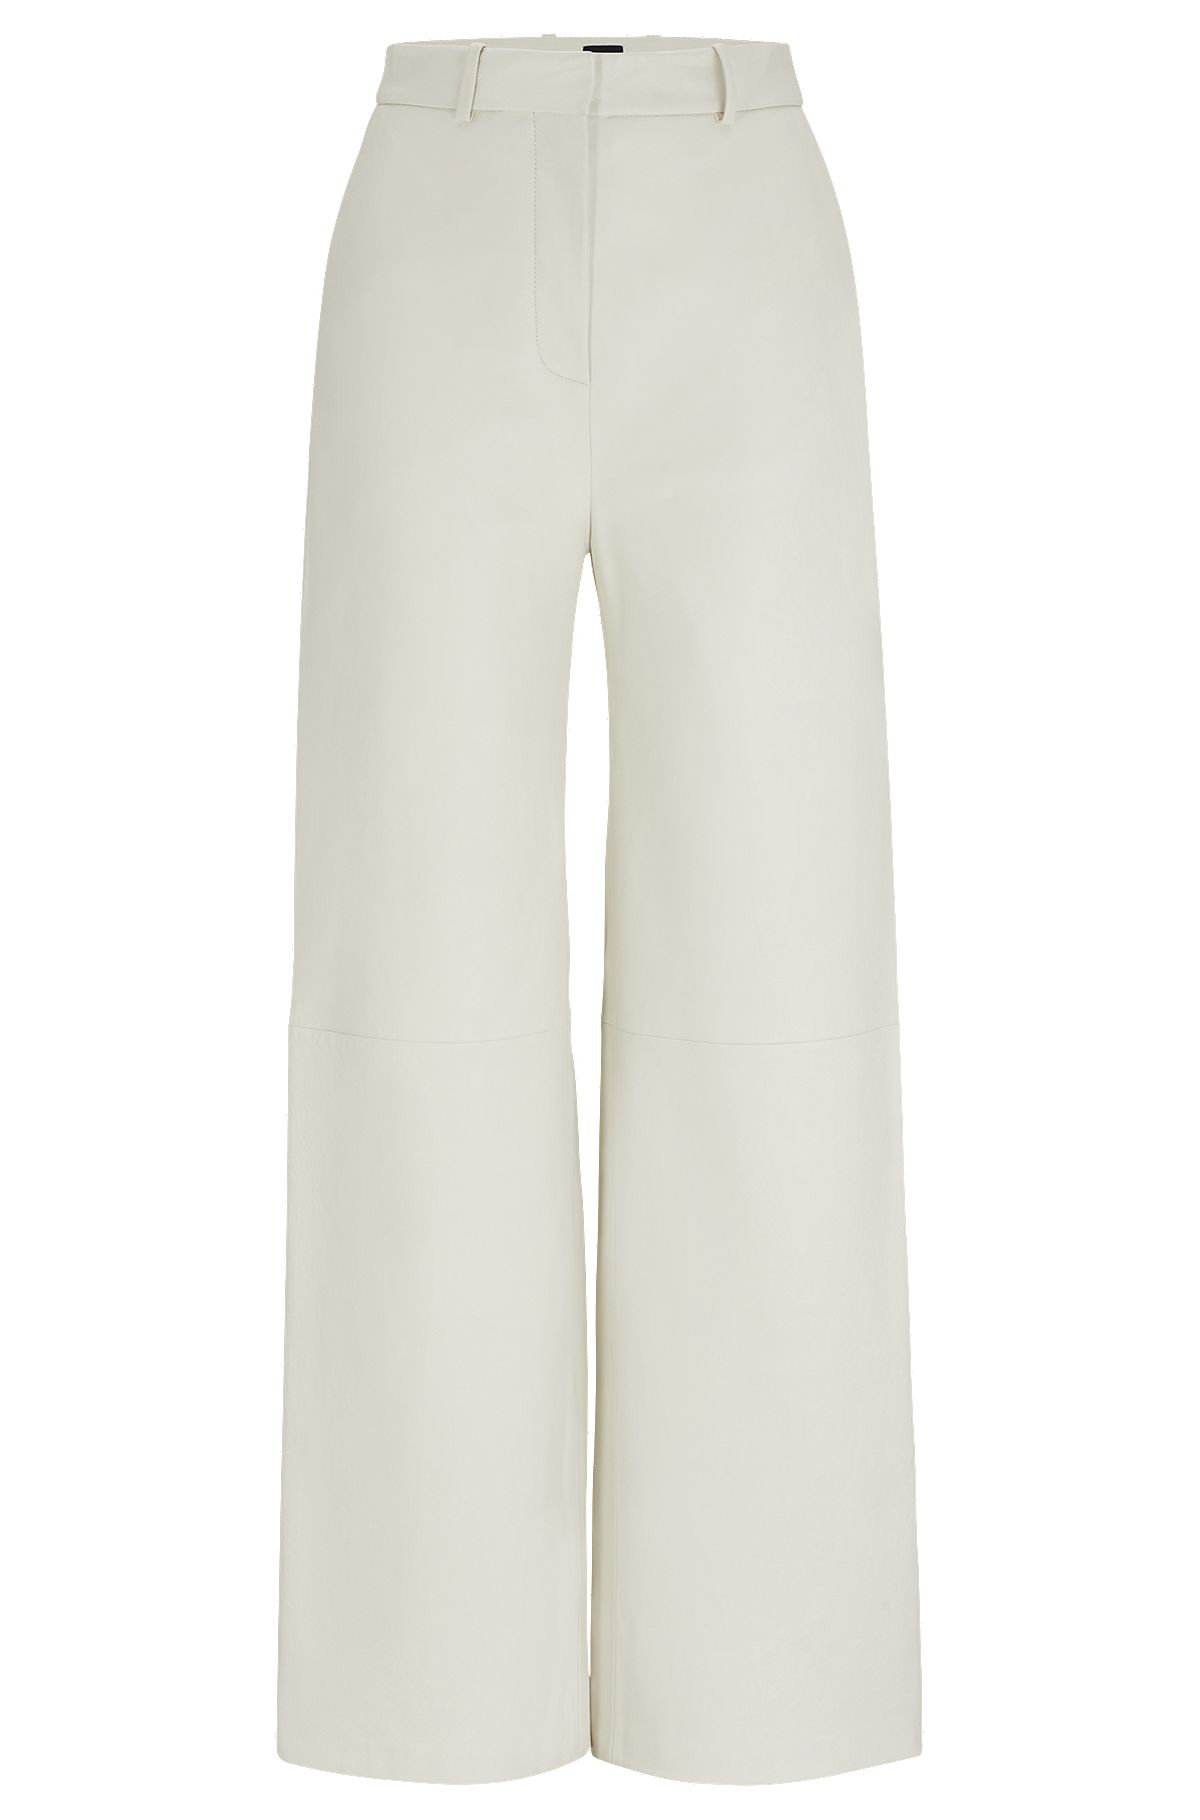 Кожаные брюки стандартного кроя с широкими штанинами, Белый